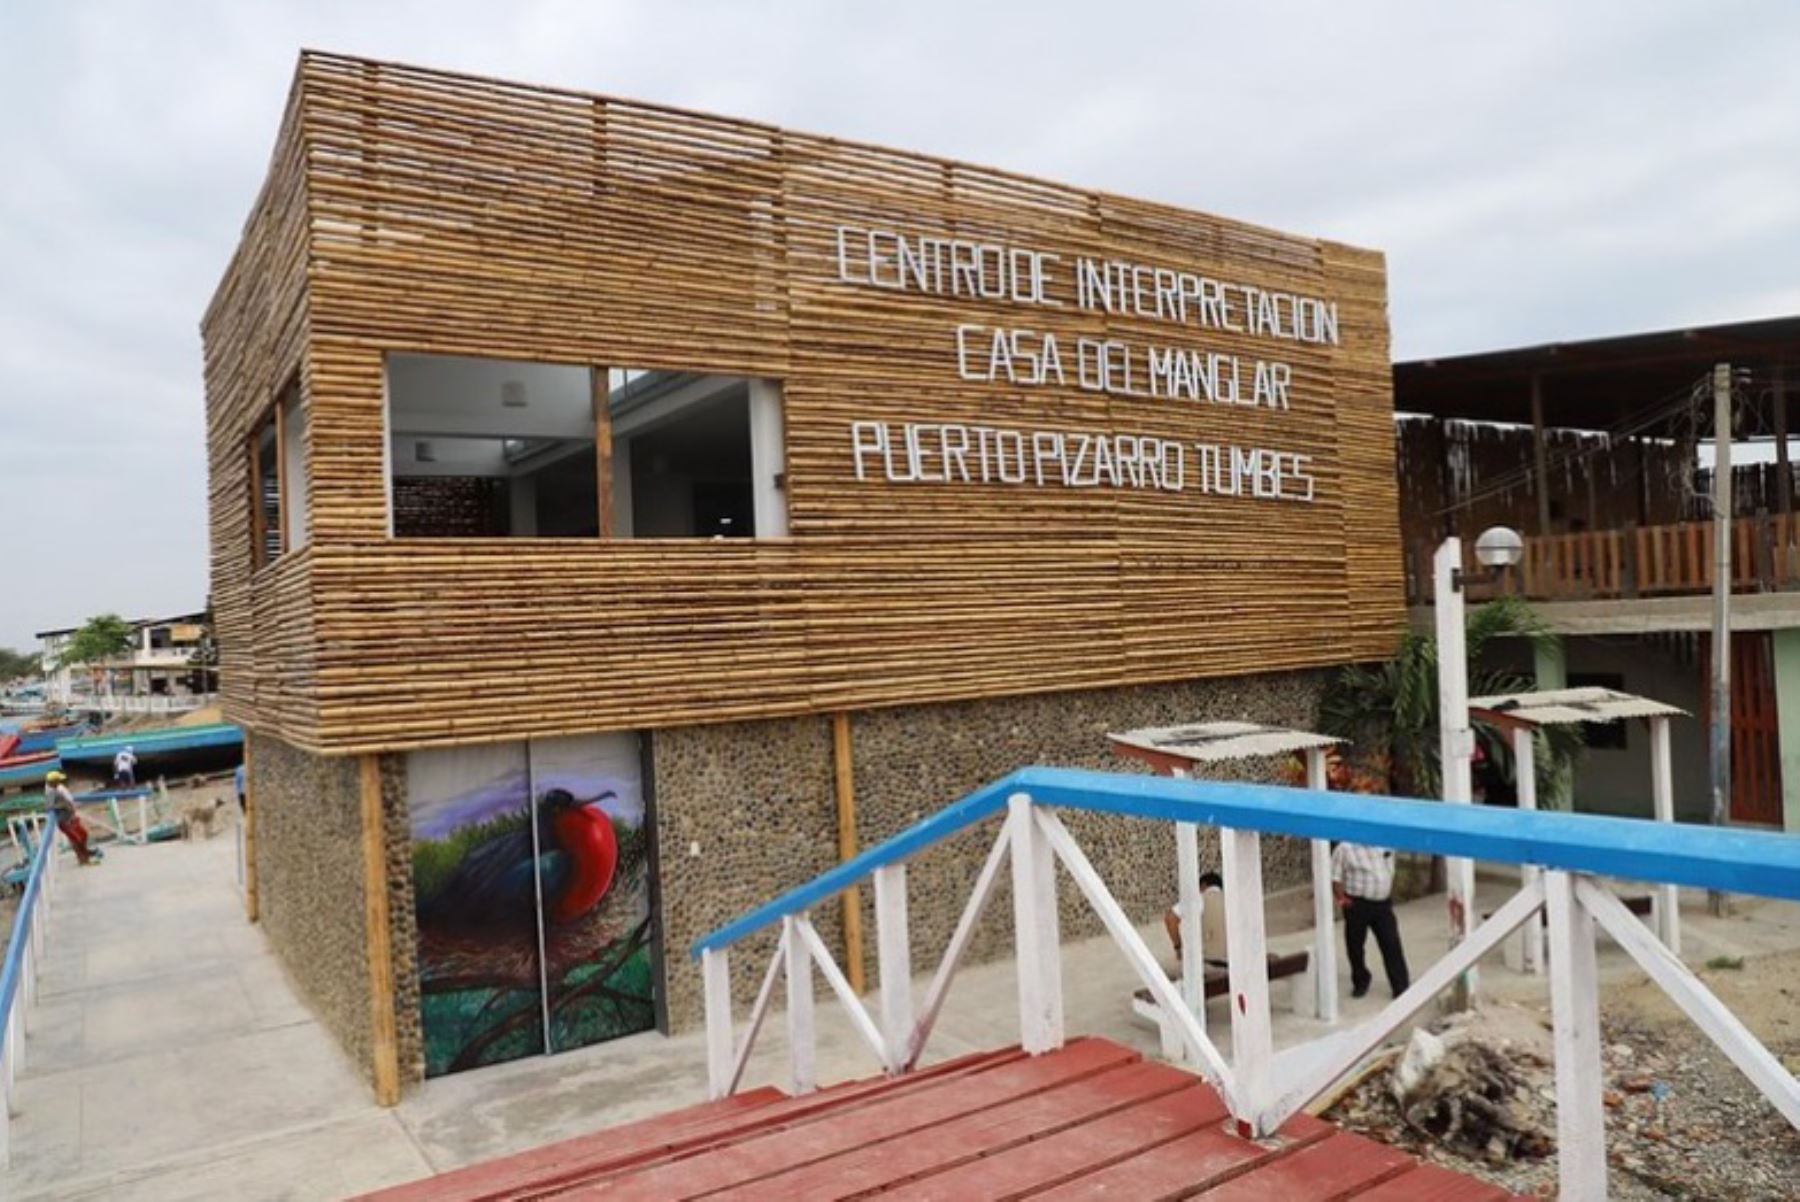 Tumbes: inauguran Centro de Interpretación "Casa del Manglar" de Puerto Pizarro